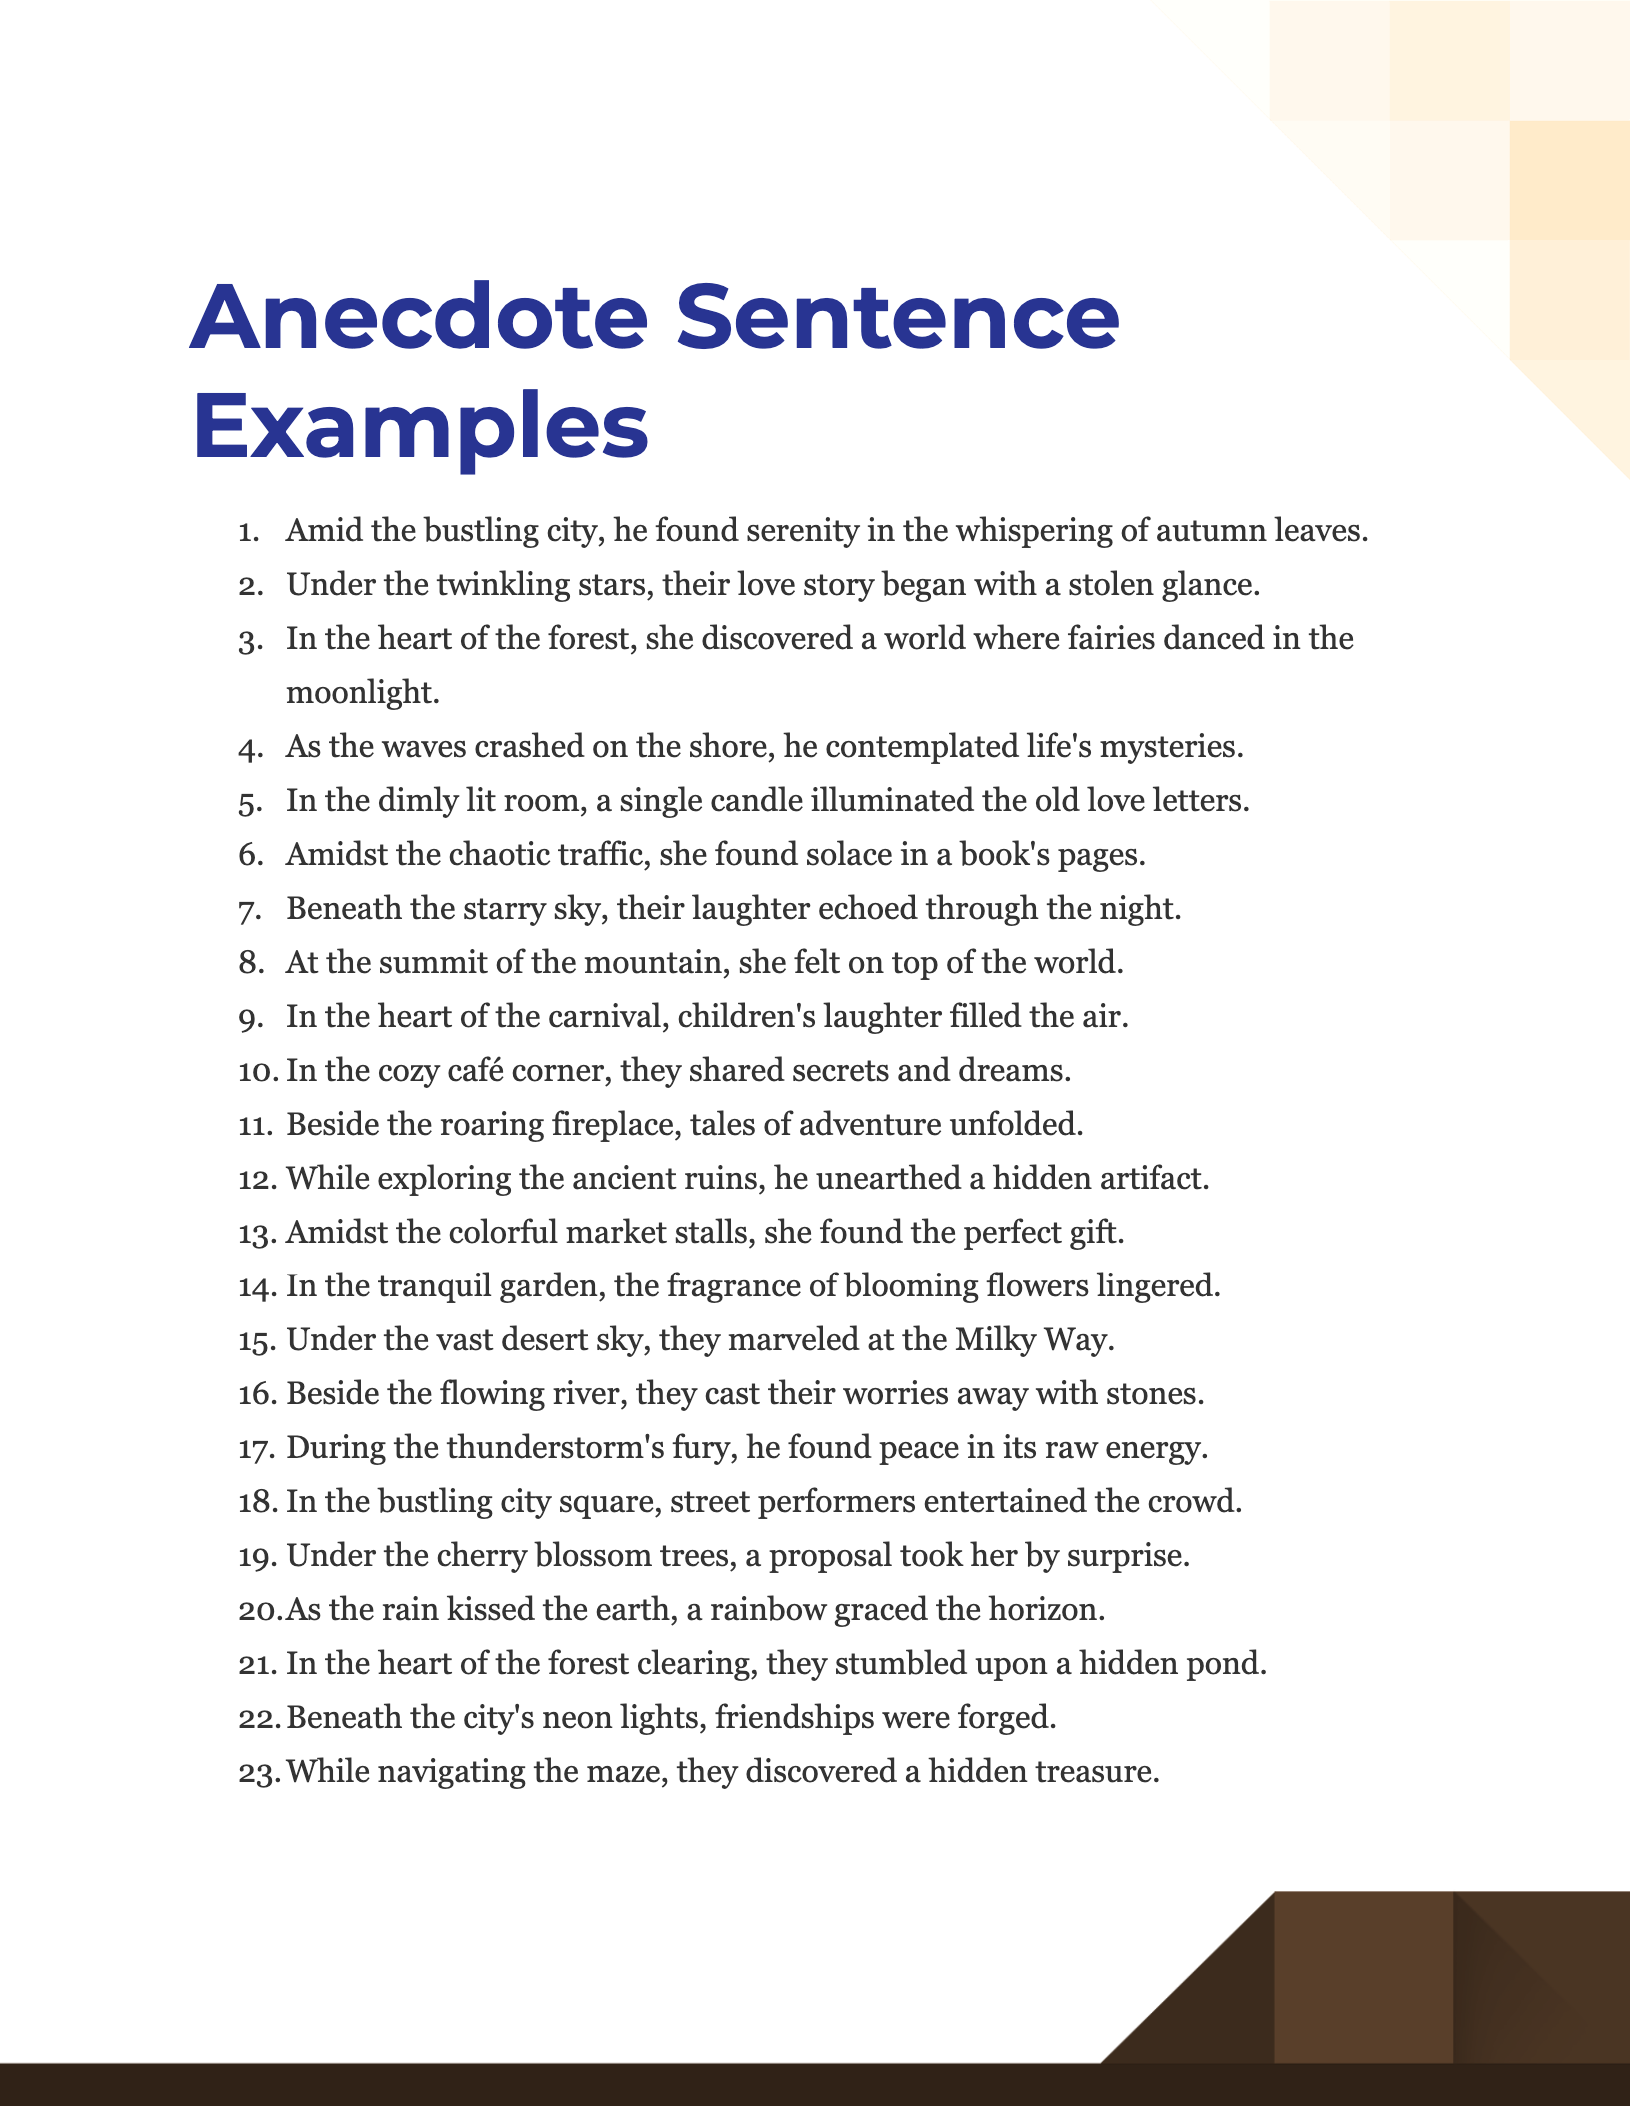 anecdote sentence